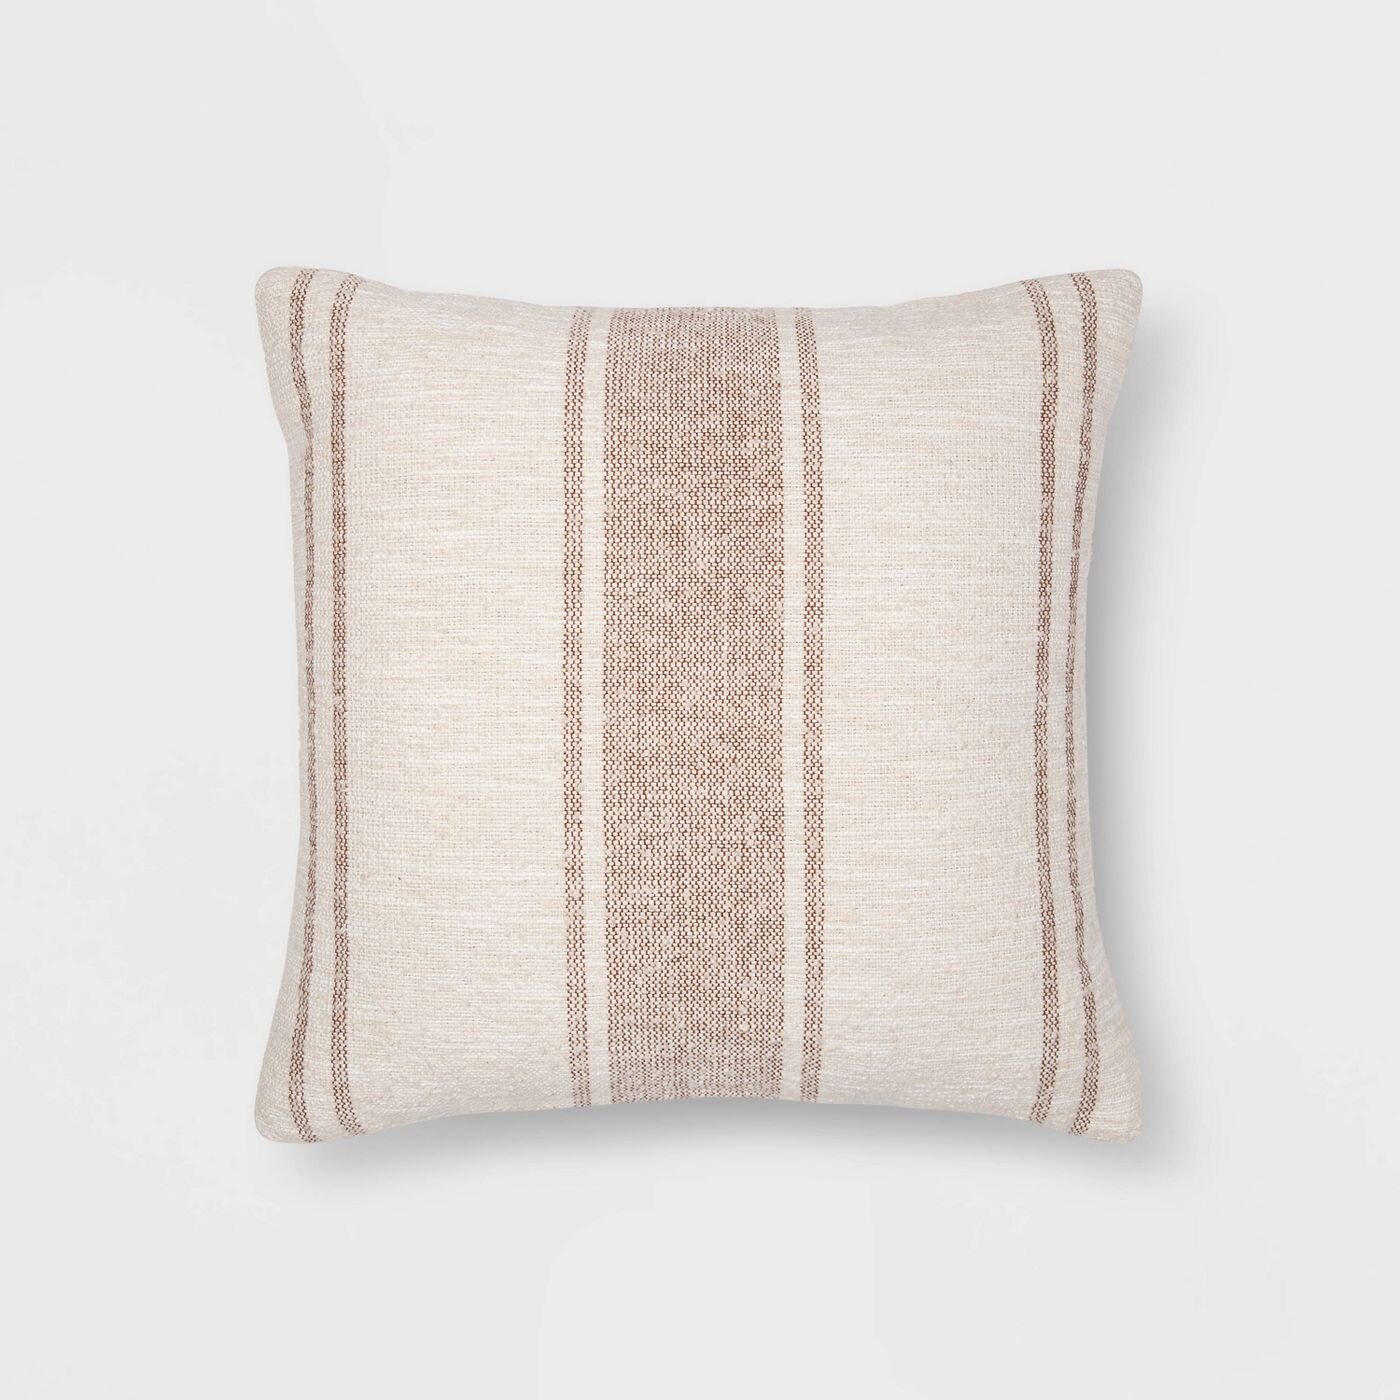 Woven Striped Throw Pillow - Threshold™